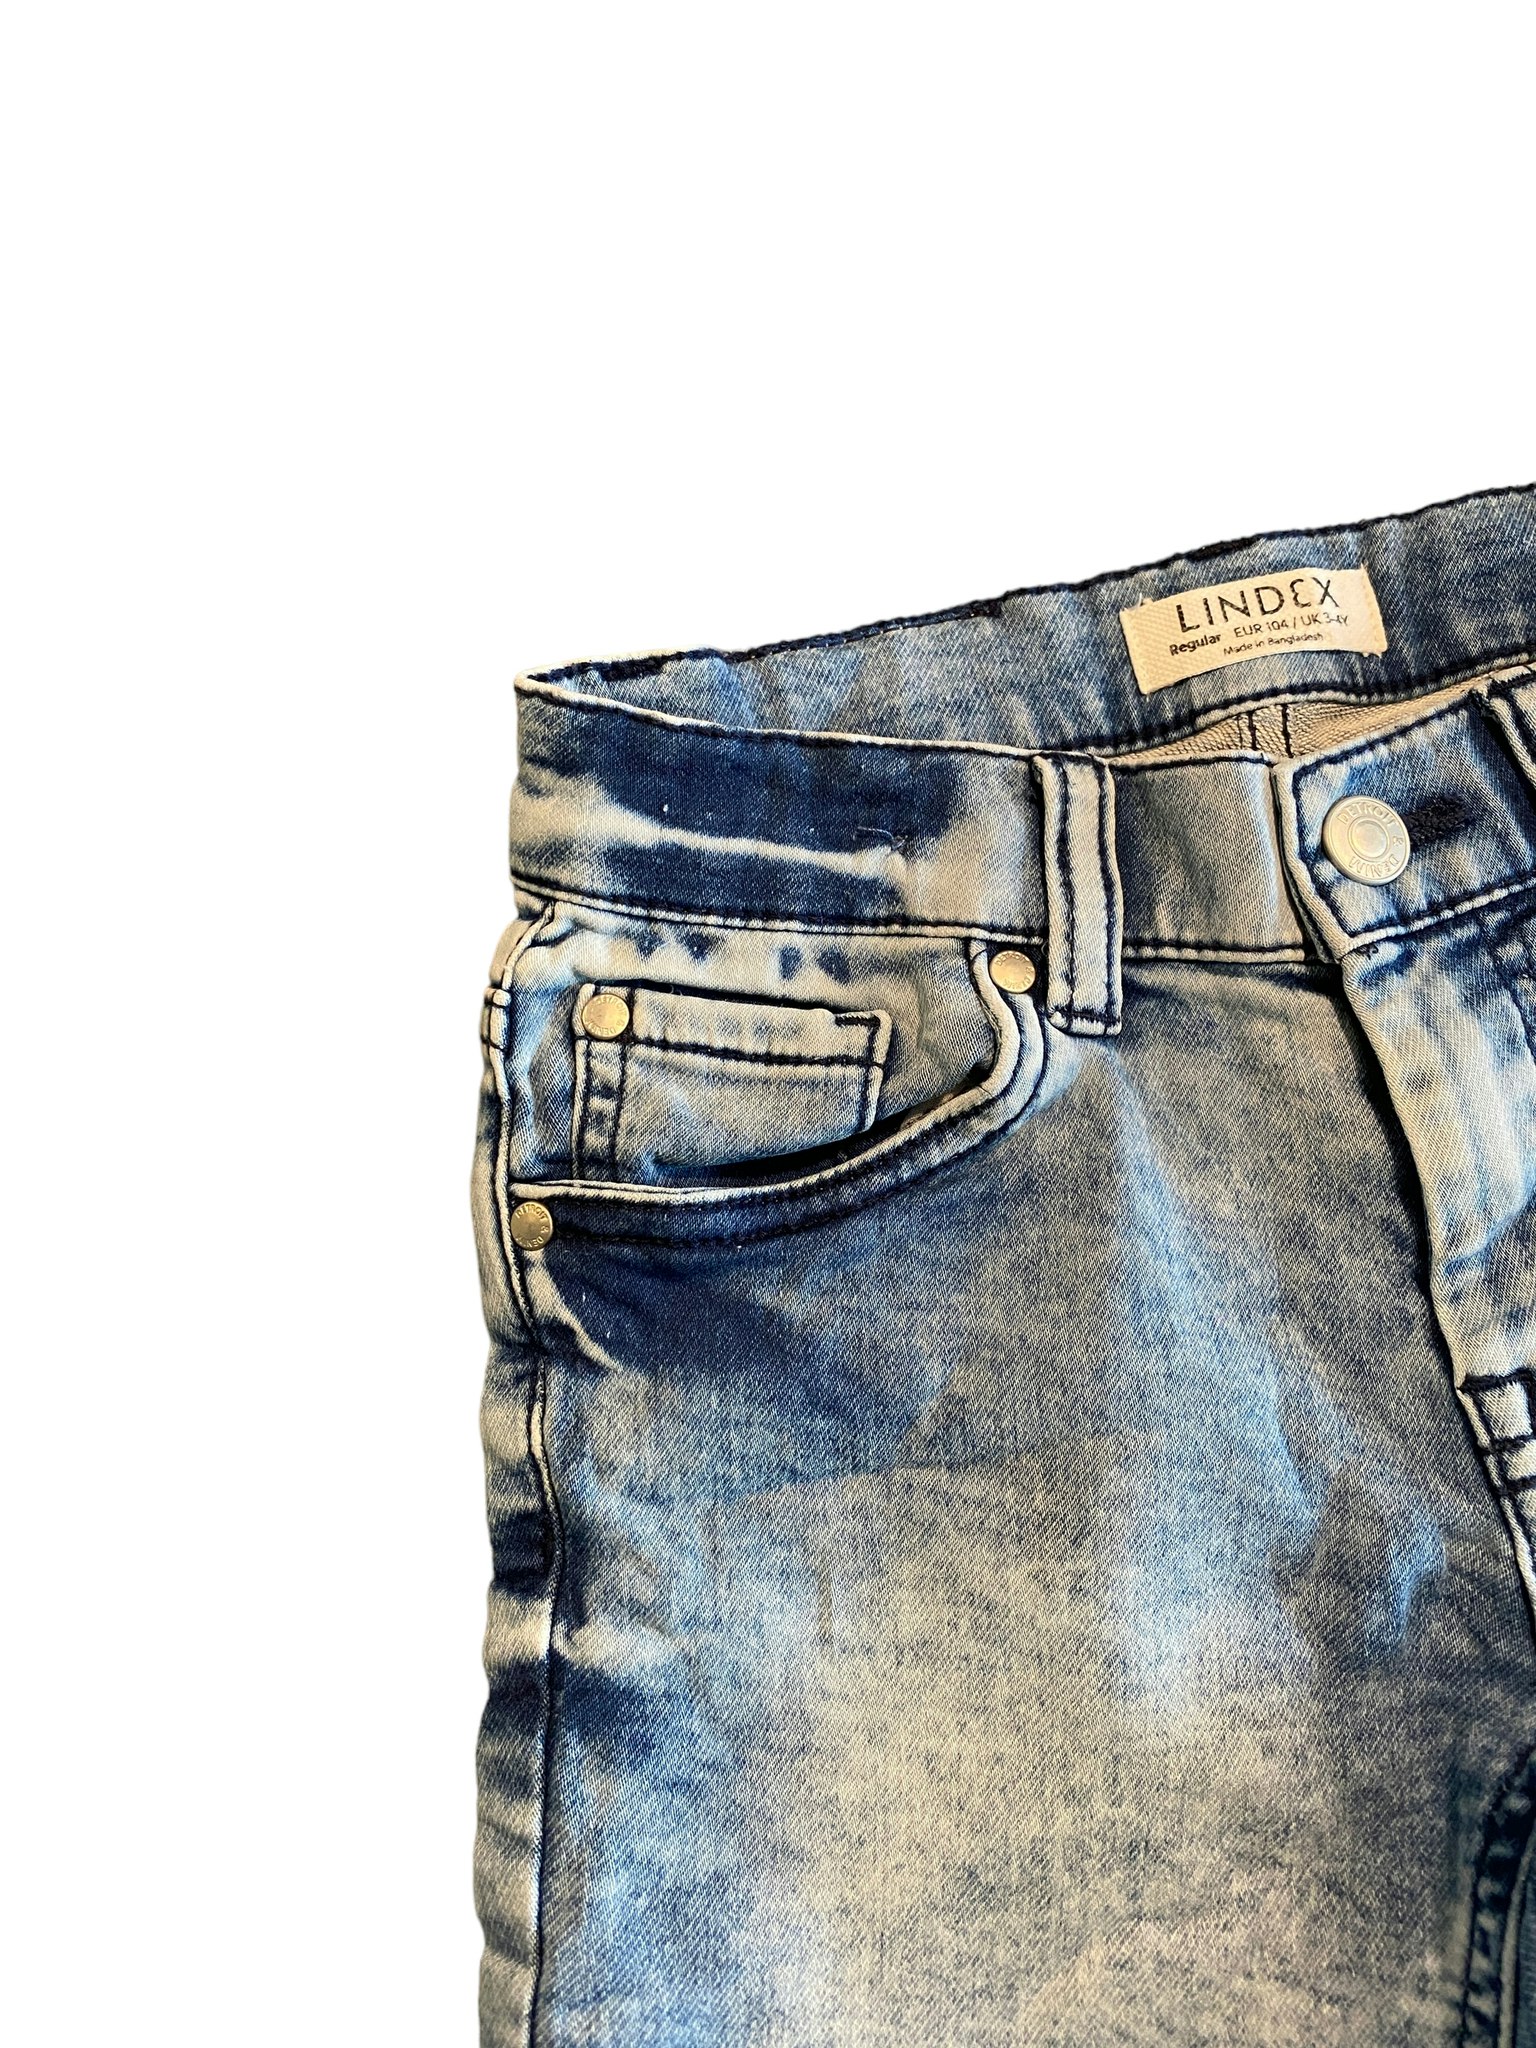 Mjuka jeansshorts, Lindex, stl 104